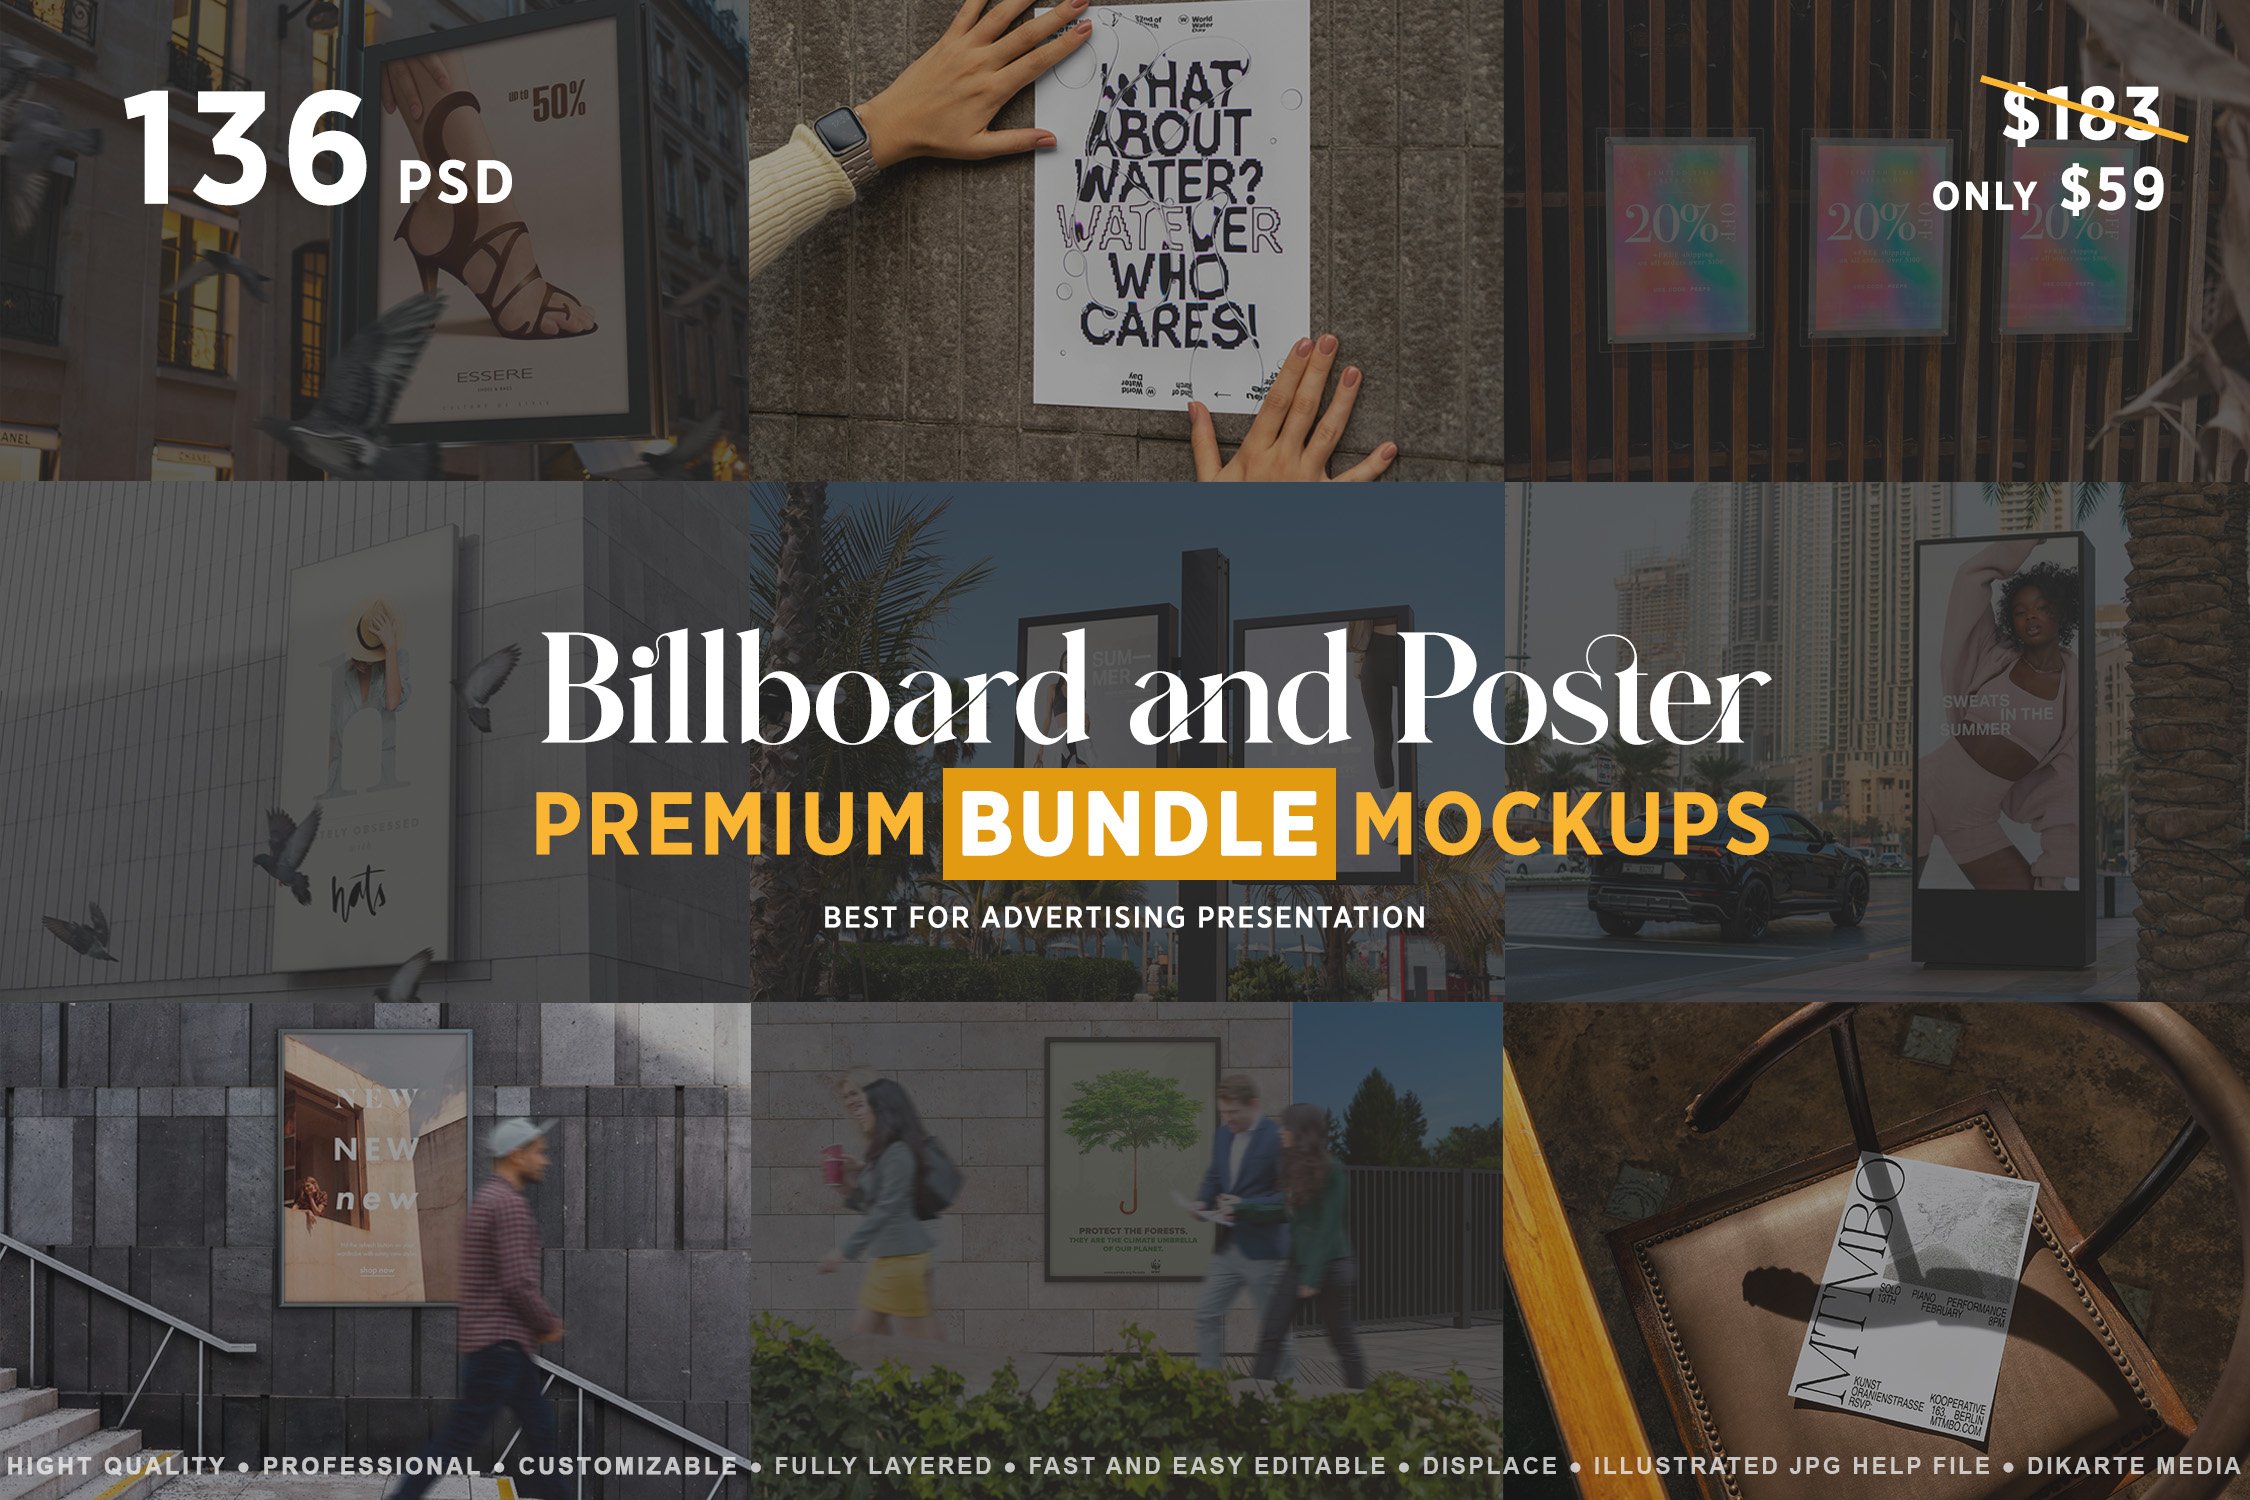 Billboard & Poster Mockups Bundle cover image.